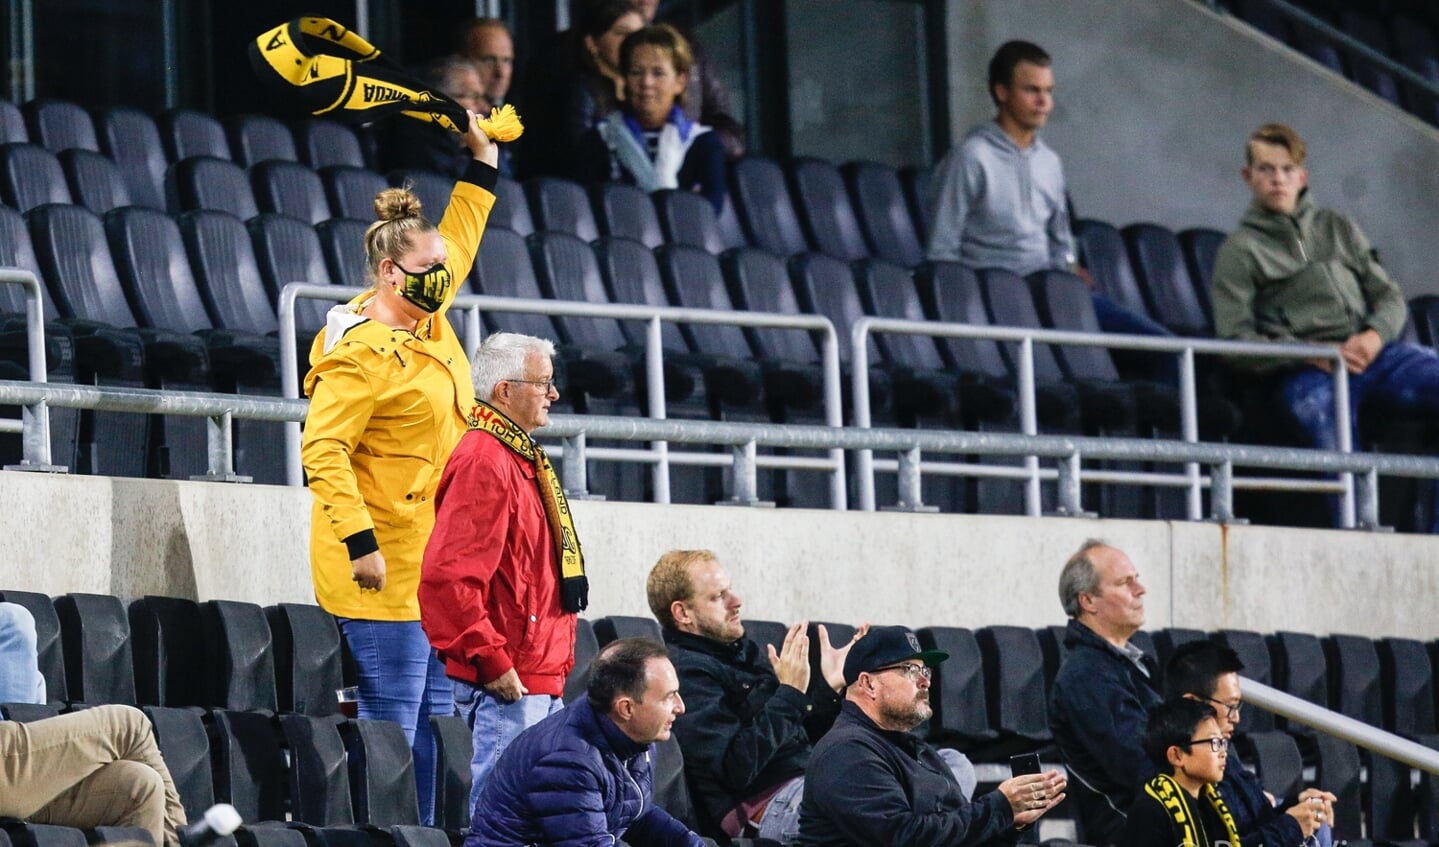 NAC wint met 6-1 van Jong AZ in Rat Verlegh Stadion